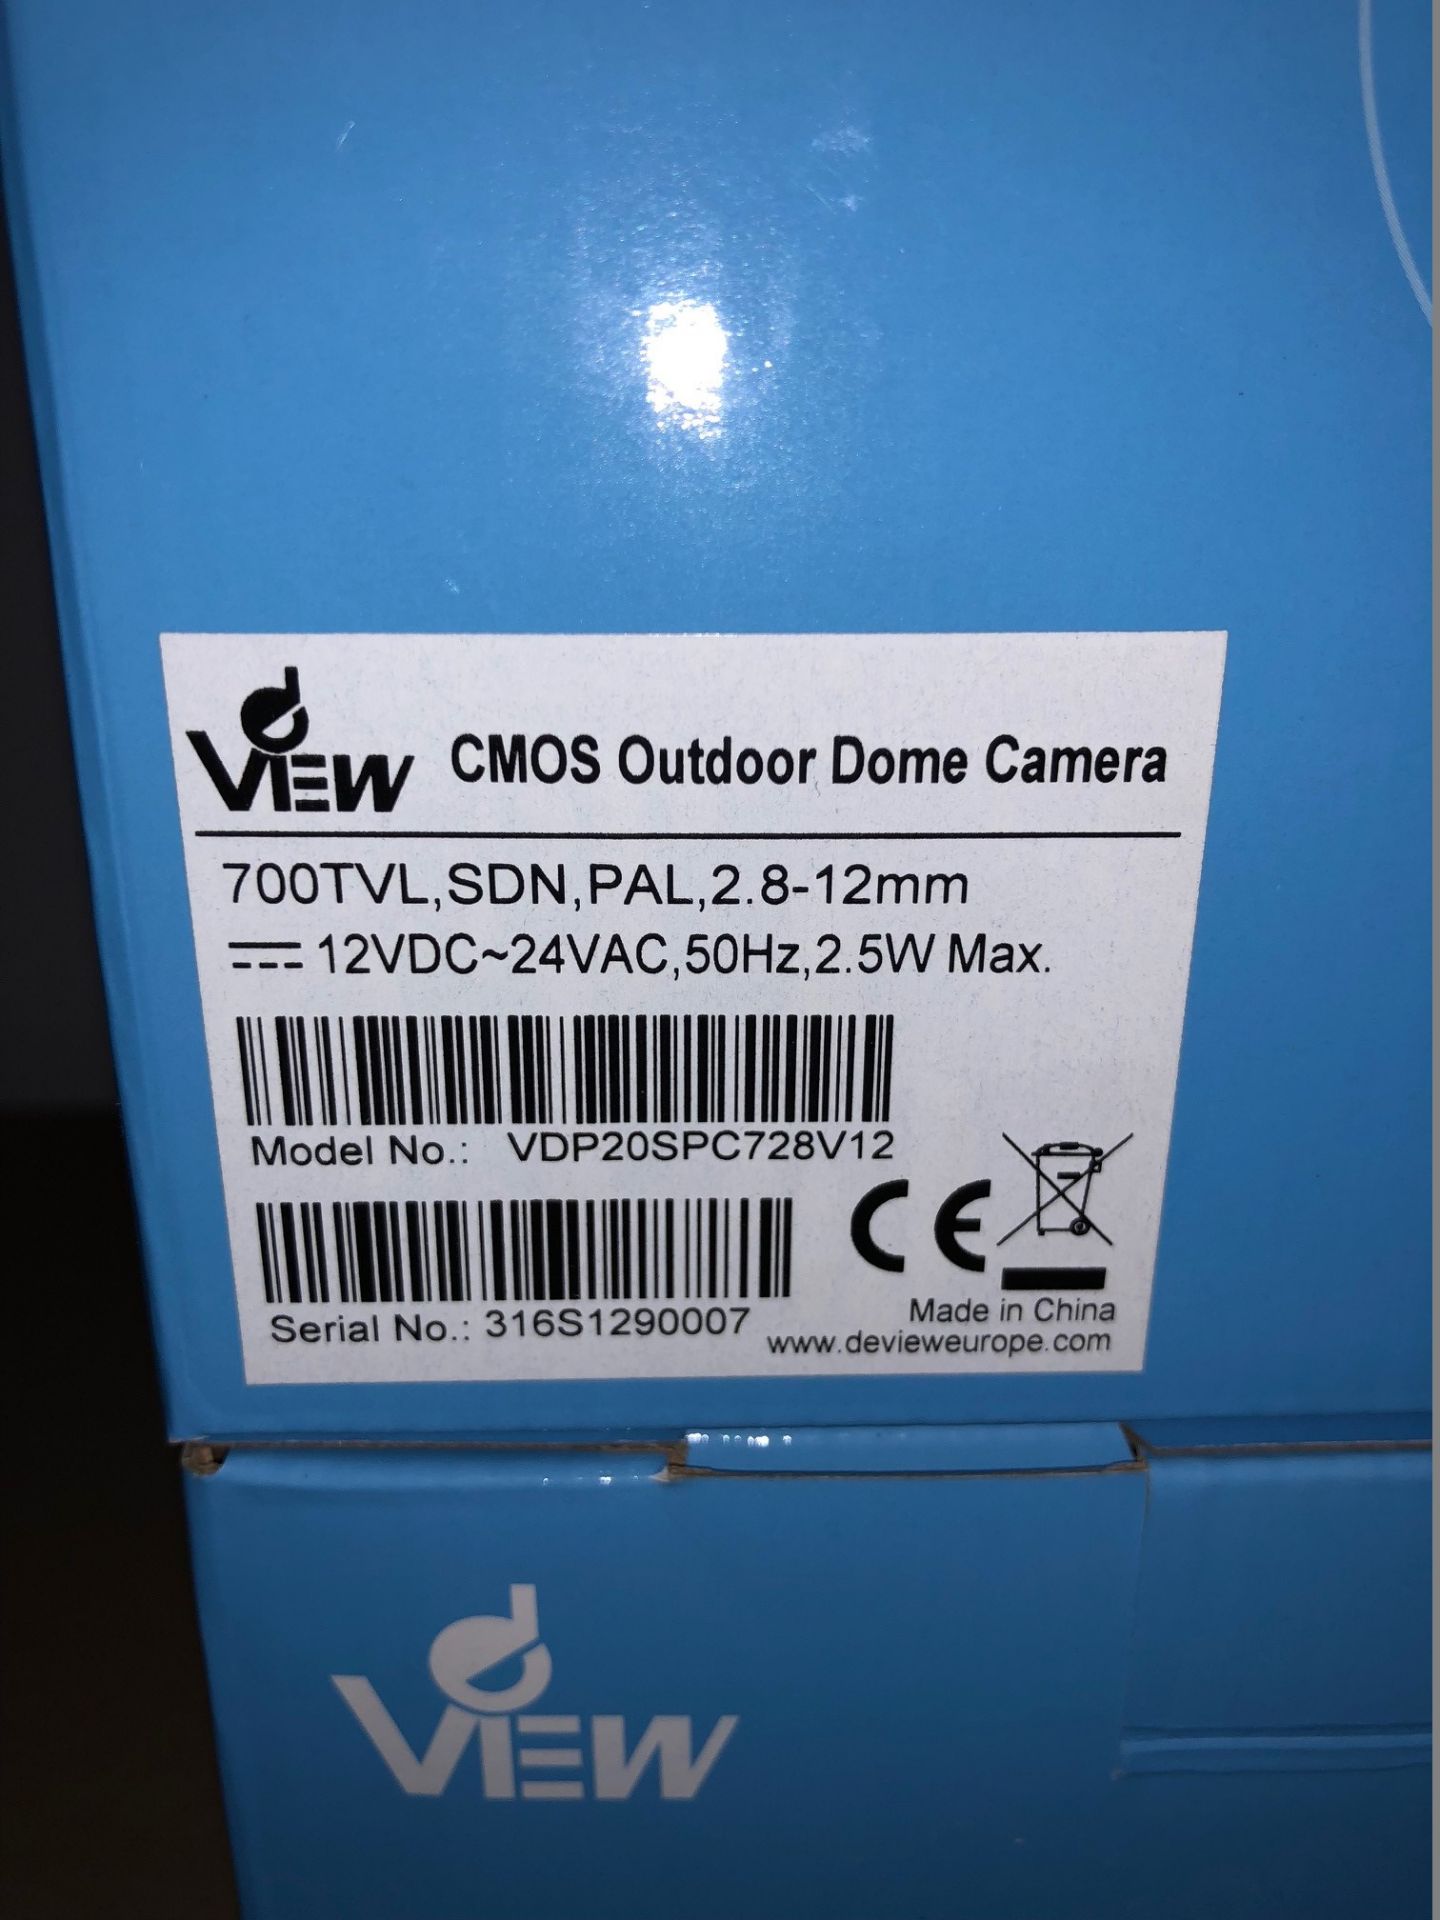 4 x dView CMOS Outdoor Dome Cameras - 700 TVL, SDN, PAL, 2.8-12mm, IR - Model VDP20SPC728V12 ( - Image 2 of 3